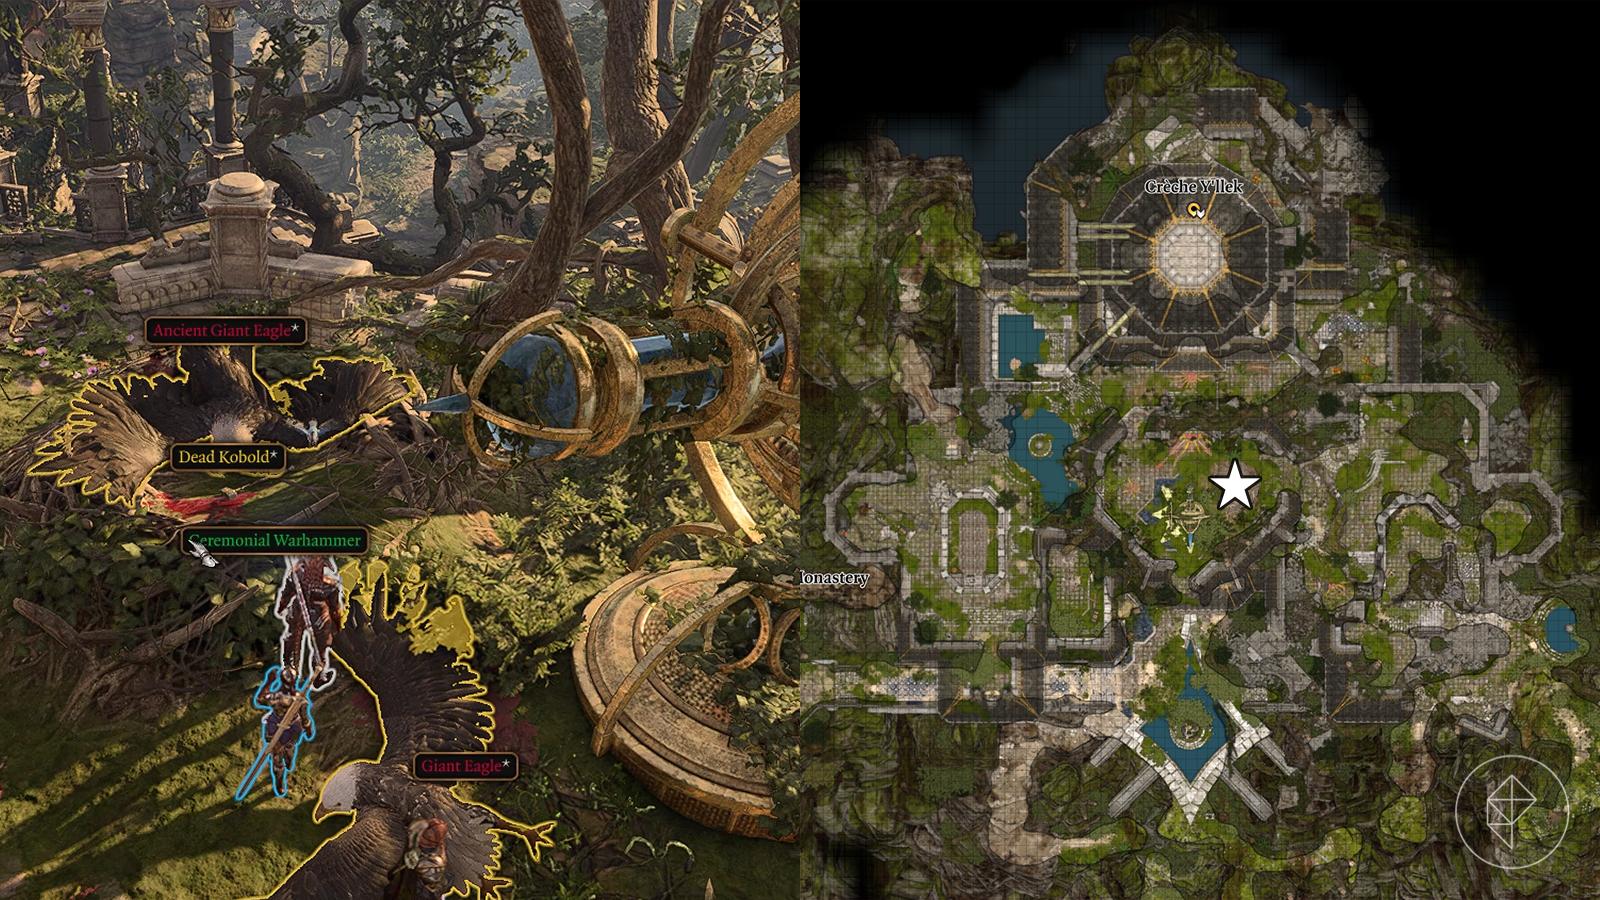 Baldur’s Gate 3 player using a hidden path to navigate around a barrier in the Secret Chamber